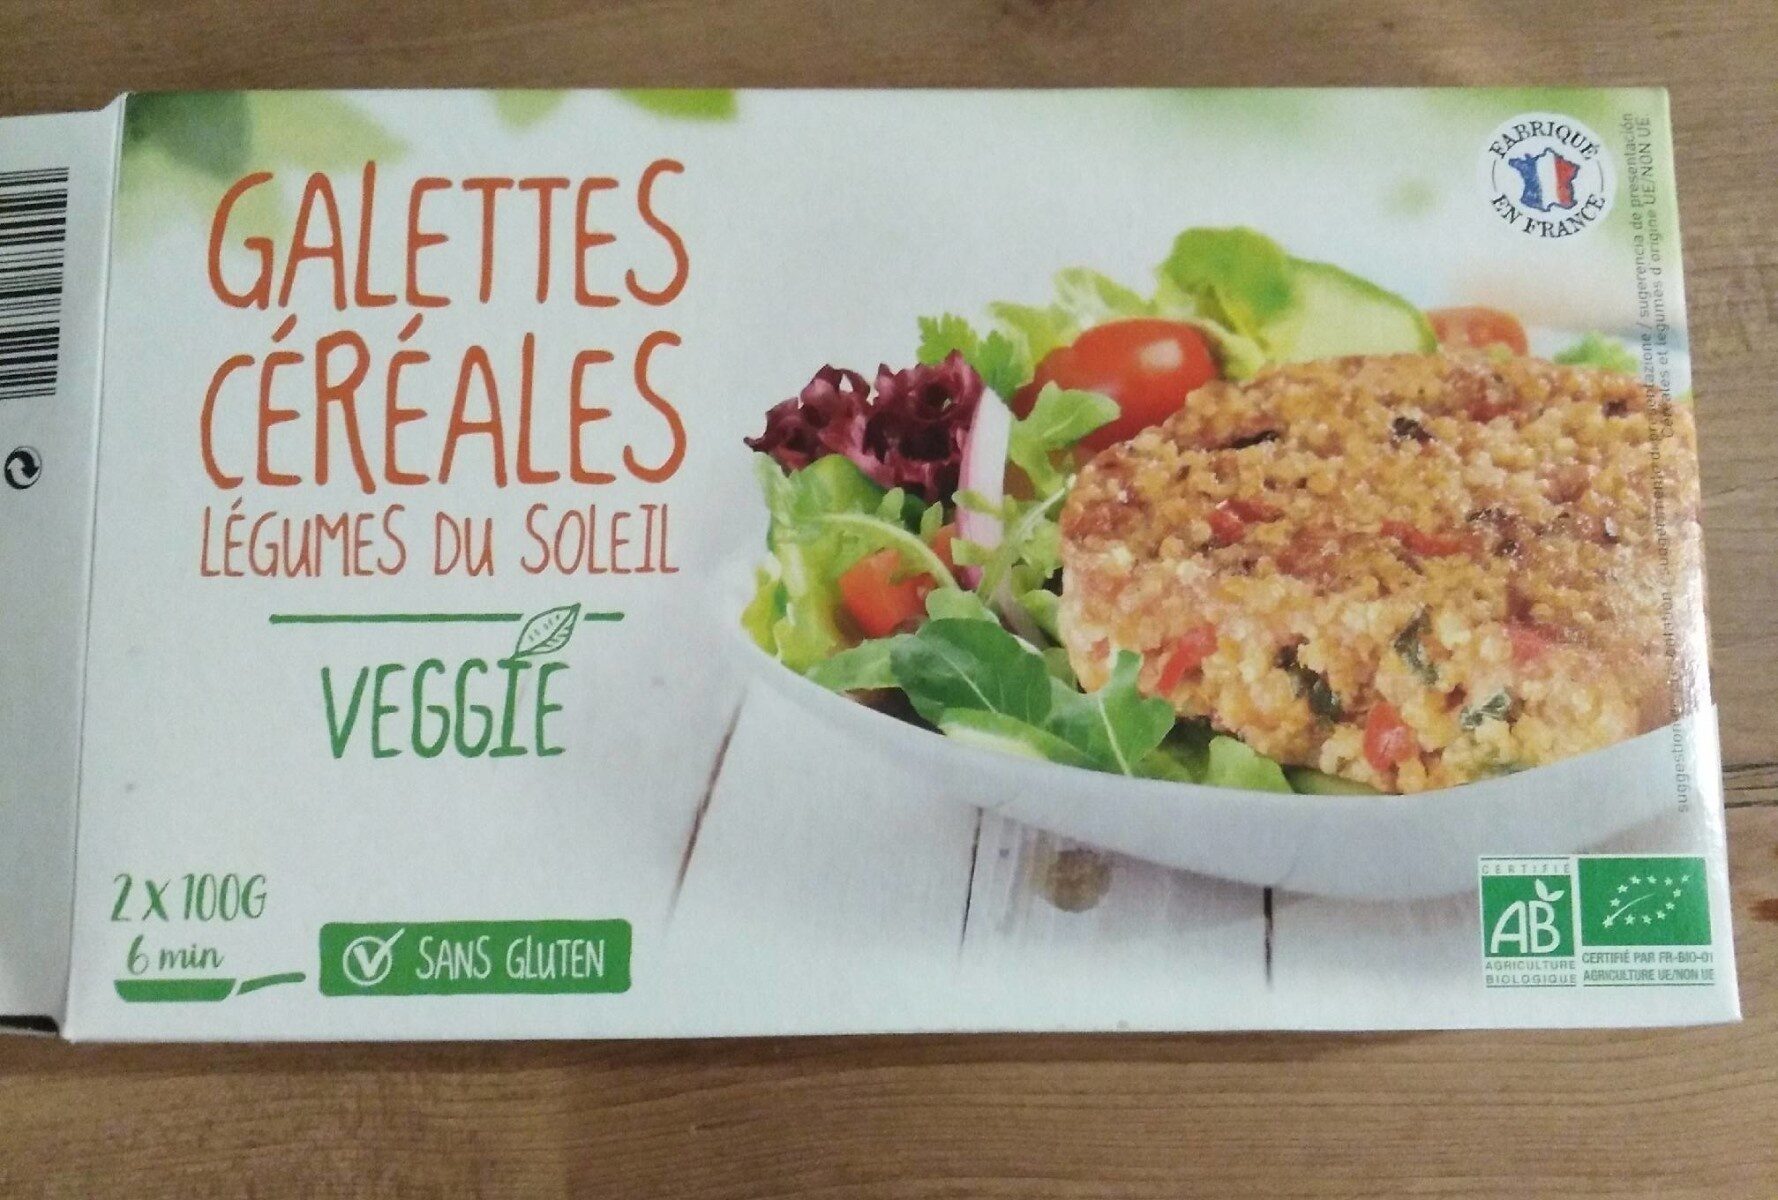 Galettes céréales Légumes du soleil - Produkt - fr